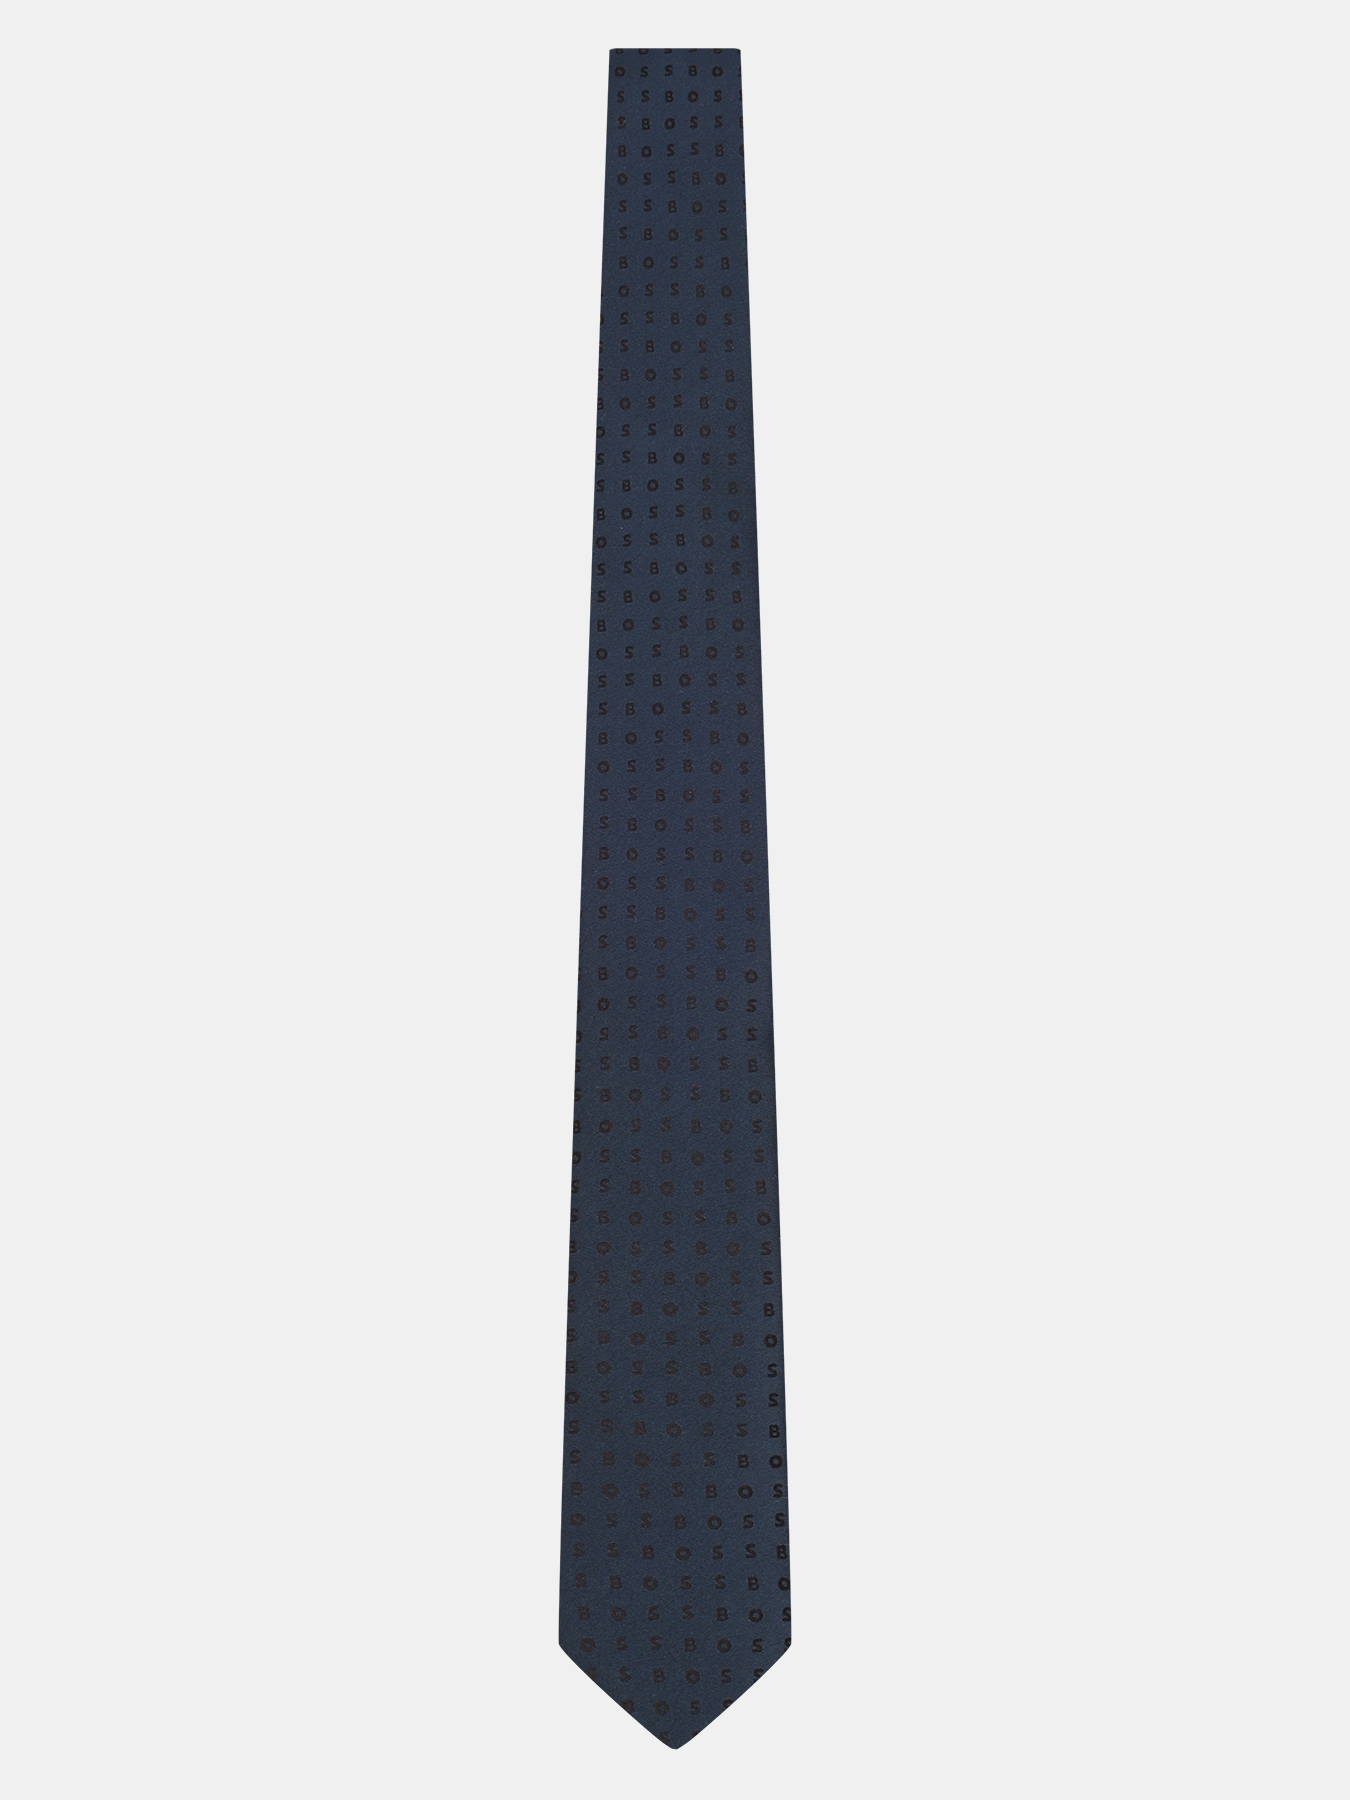 Галстук P-tie BOSS 420845-185, цвет темно-синий, размер Б/Р